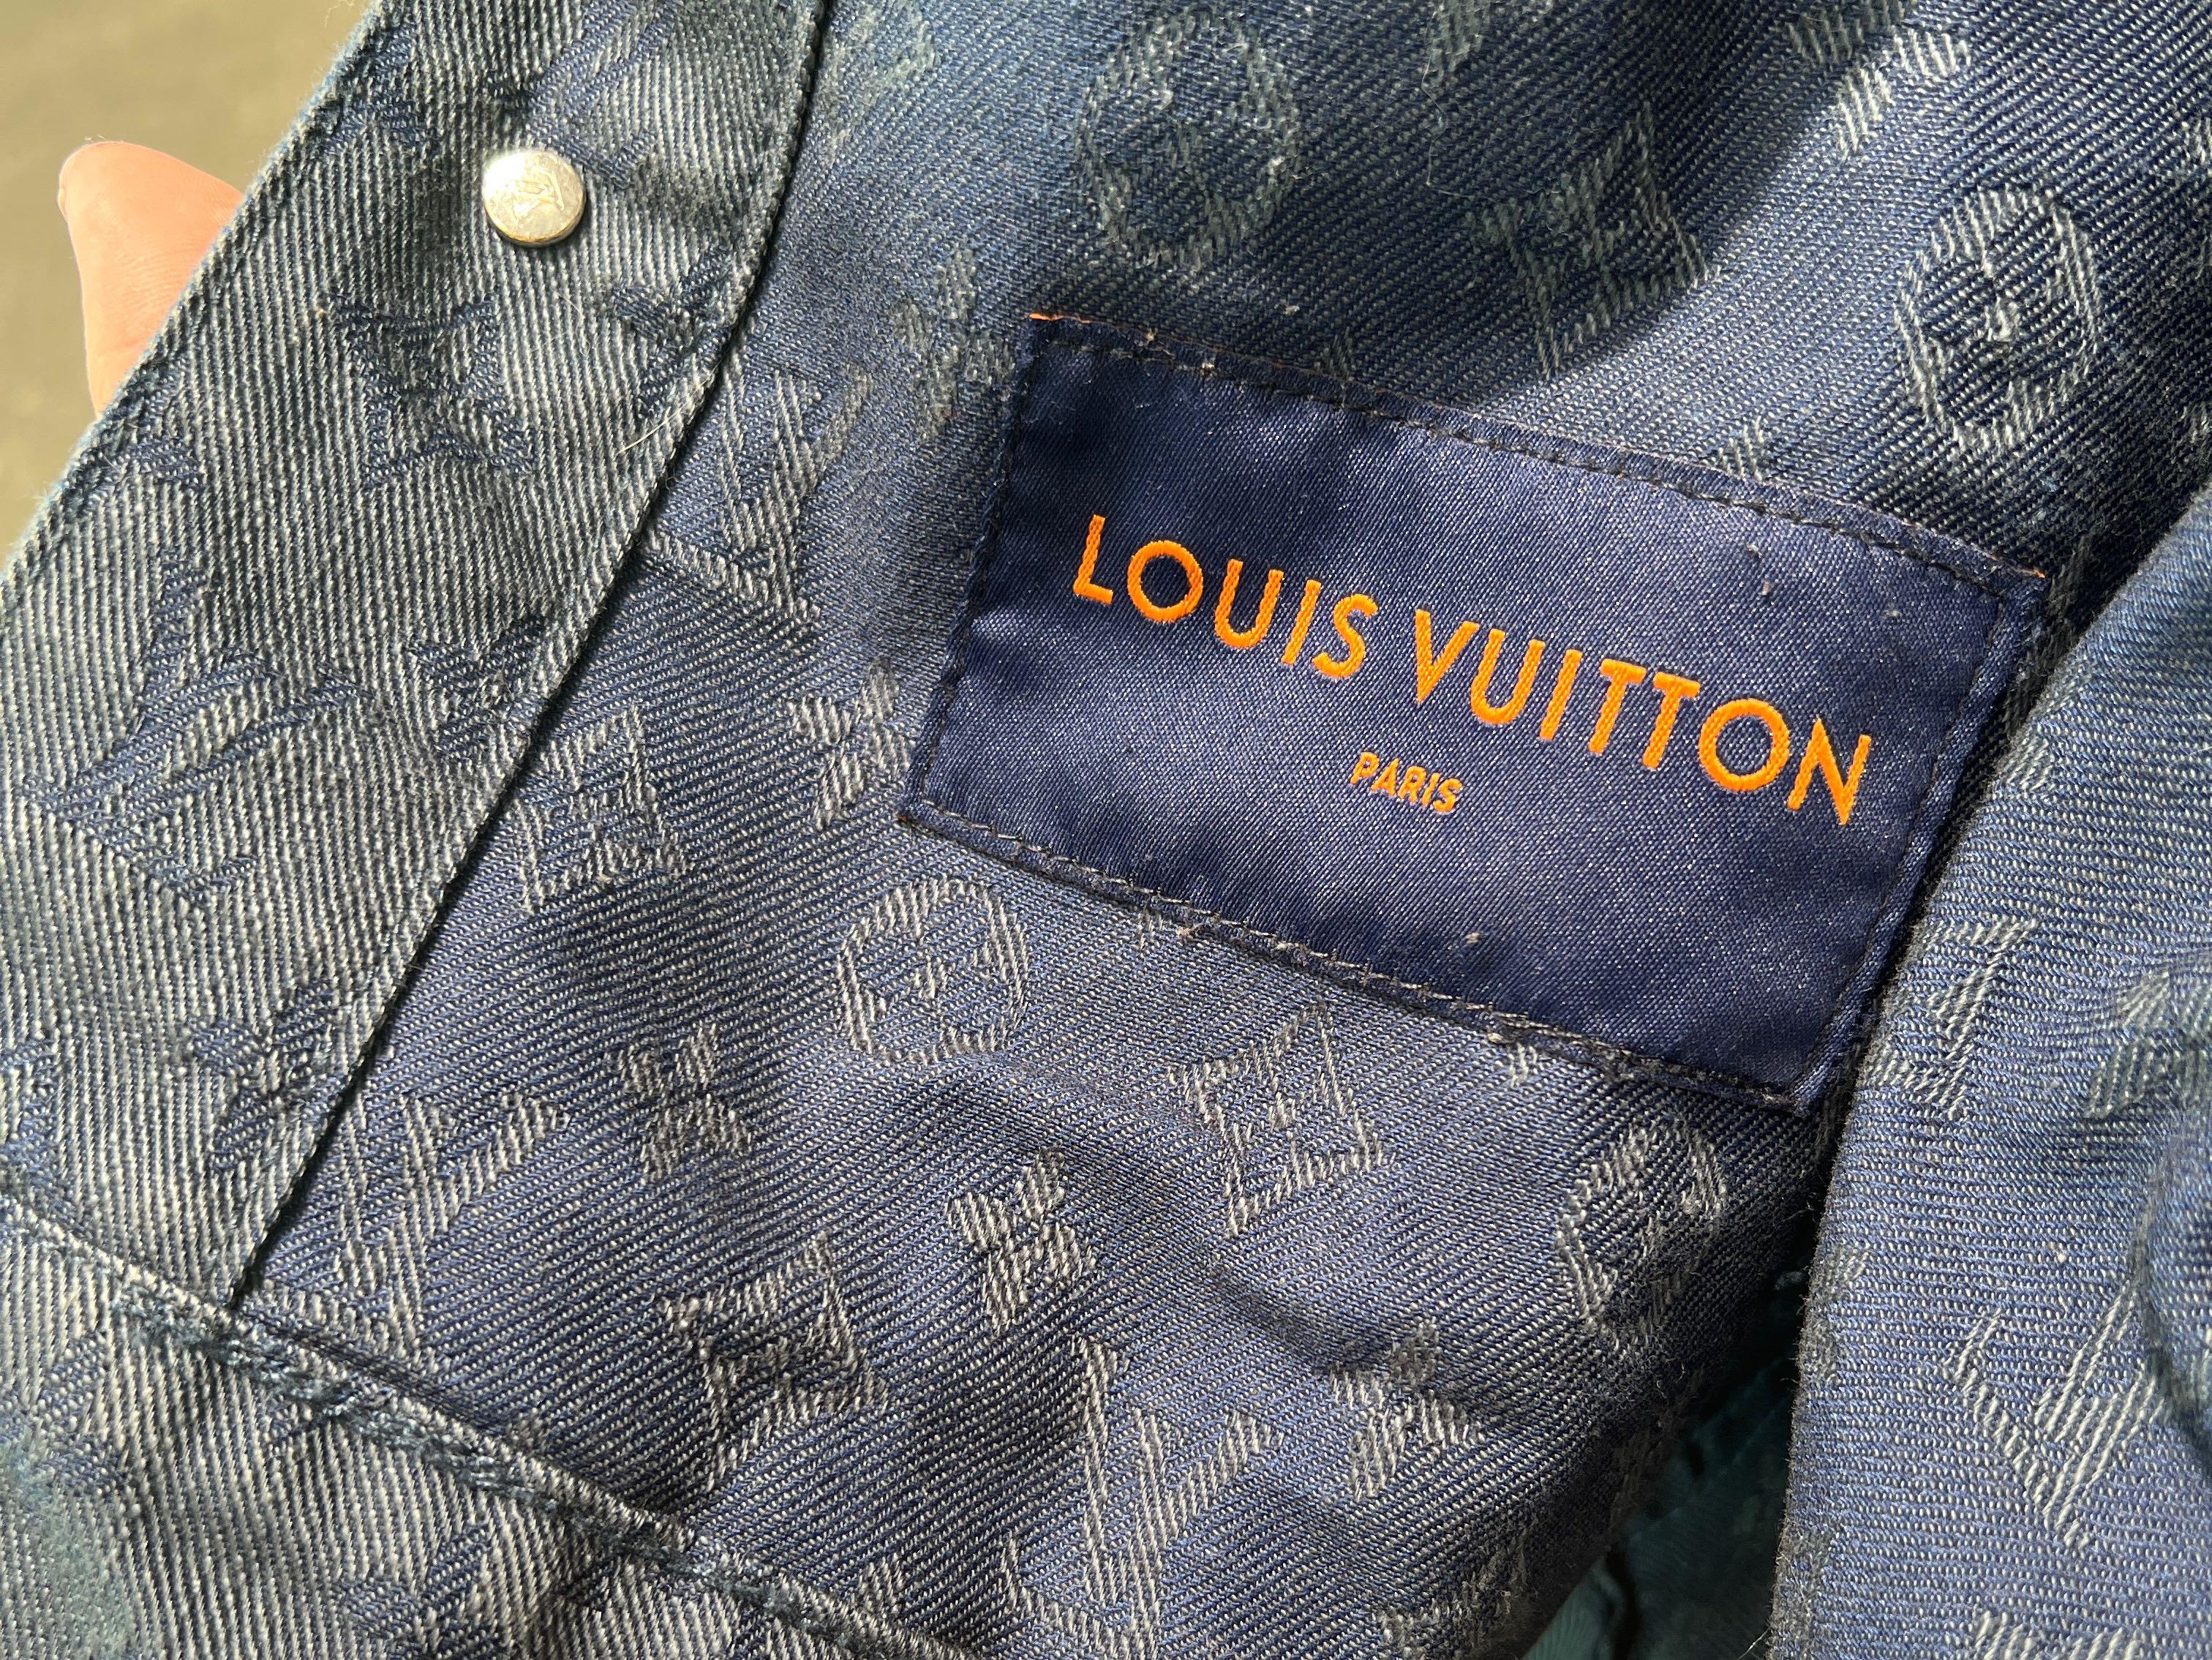 Authentic LOUIS VUITTON Denim Jackets #241-003-124-8735